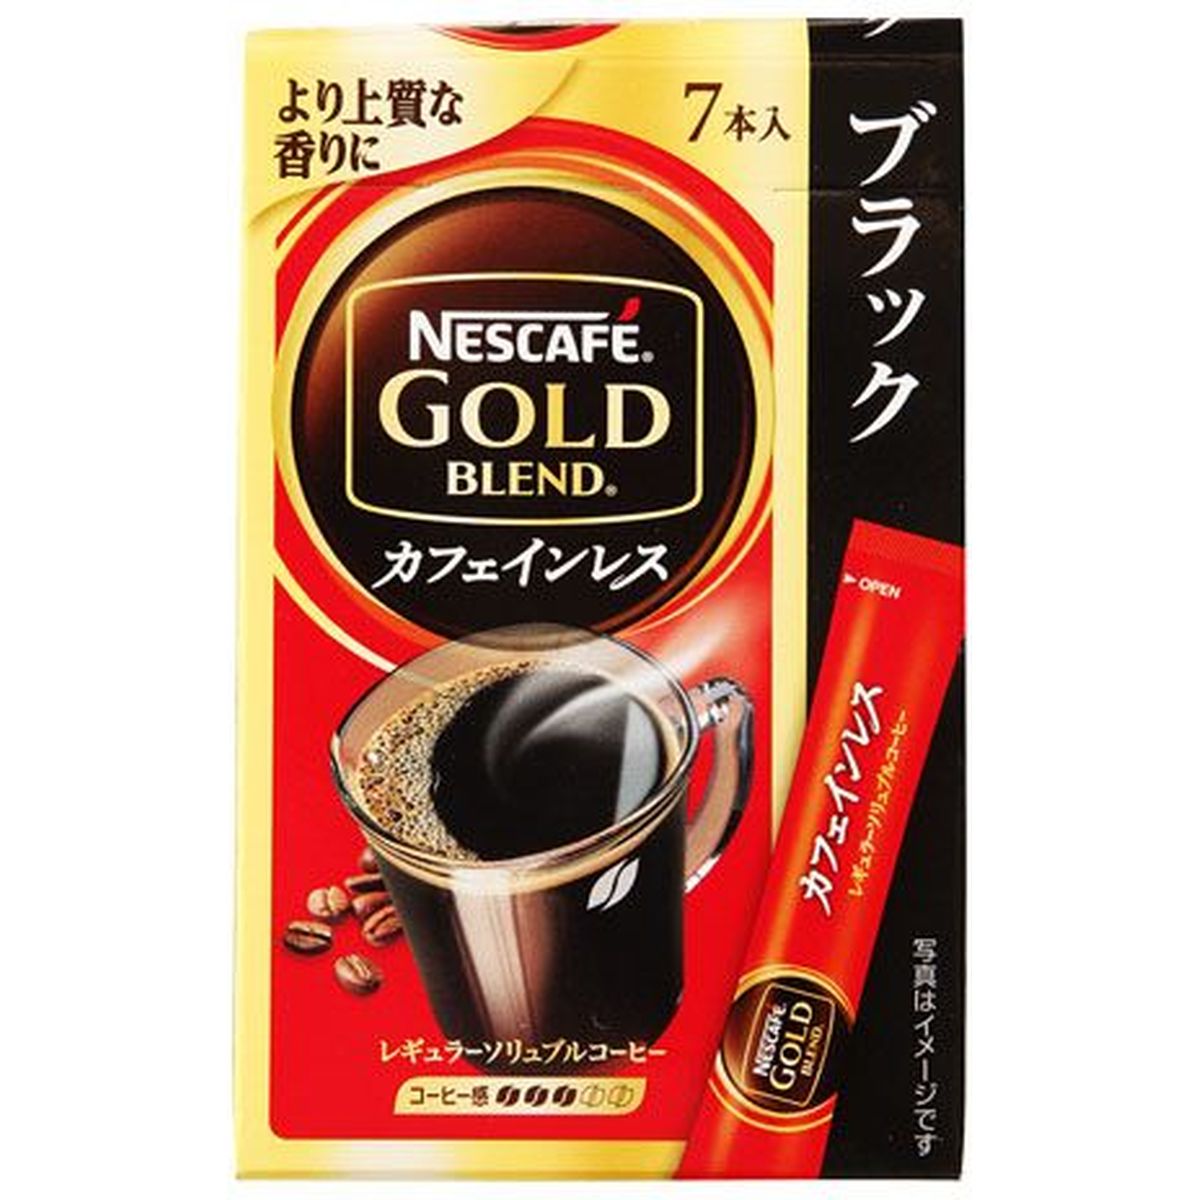 【6個入リ】ネスカフェ ゴールドブレンド カフェインレススティック ブラック 2g